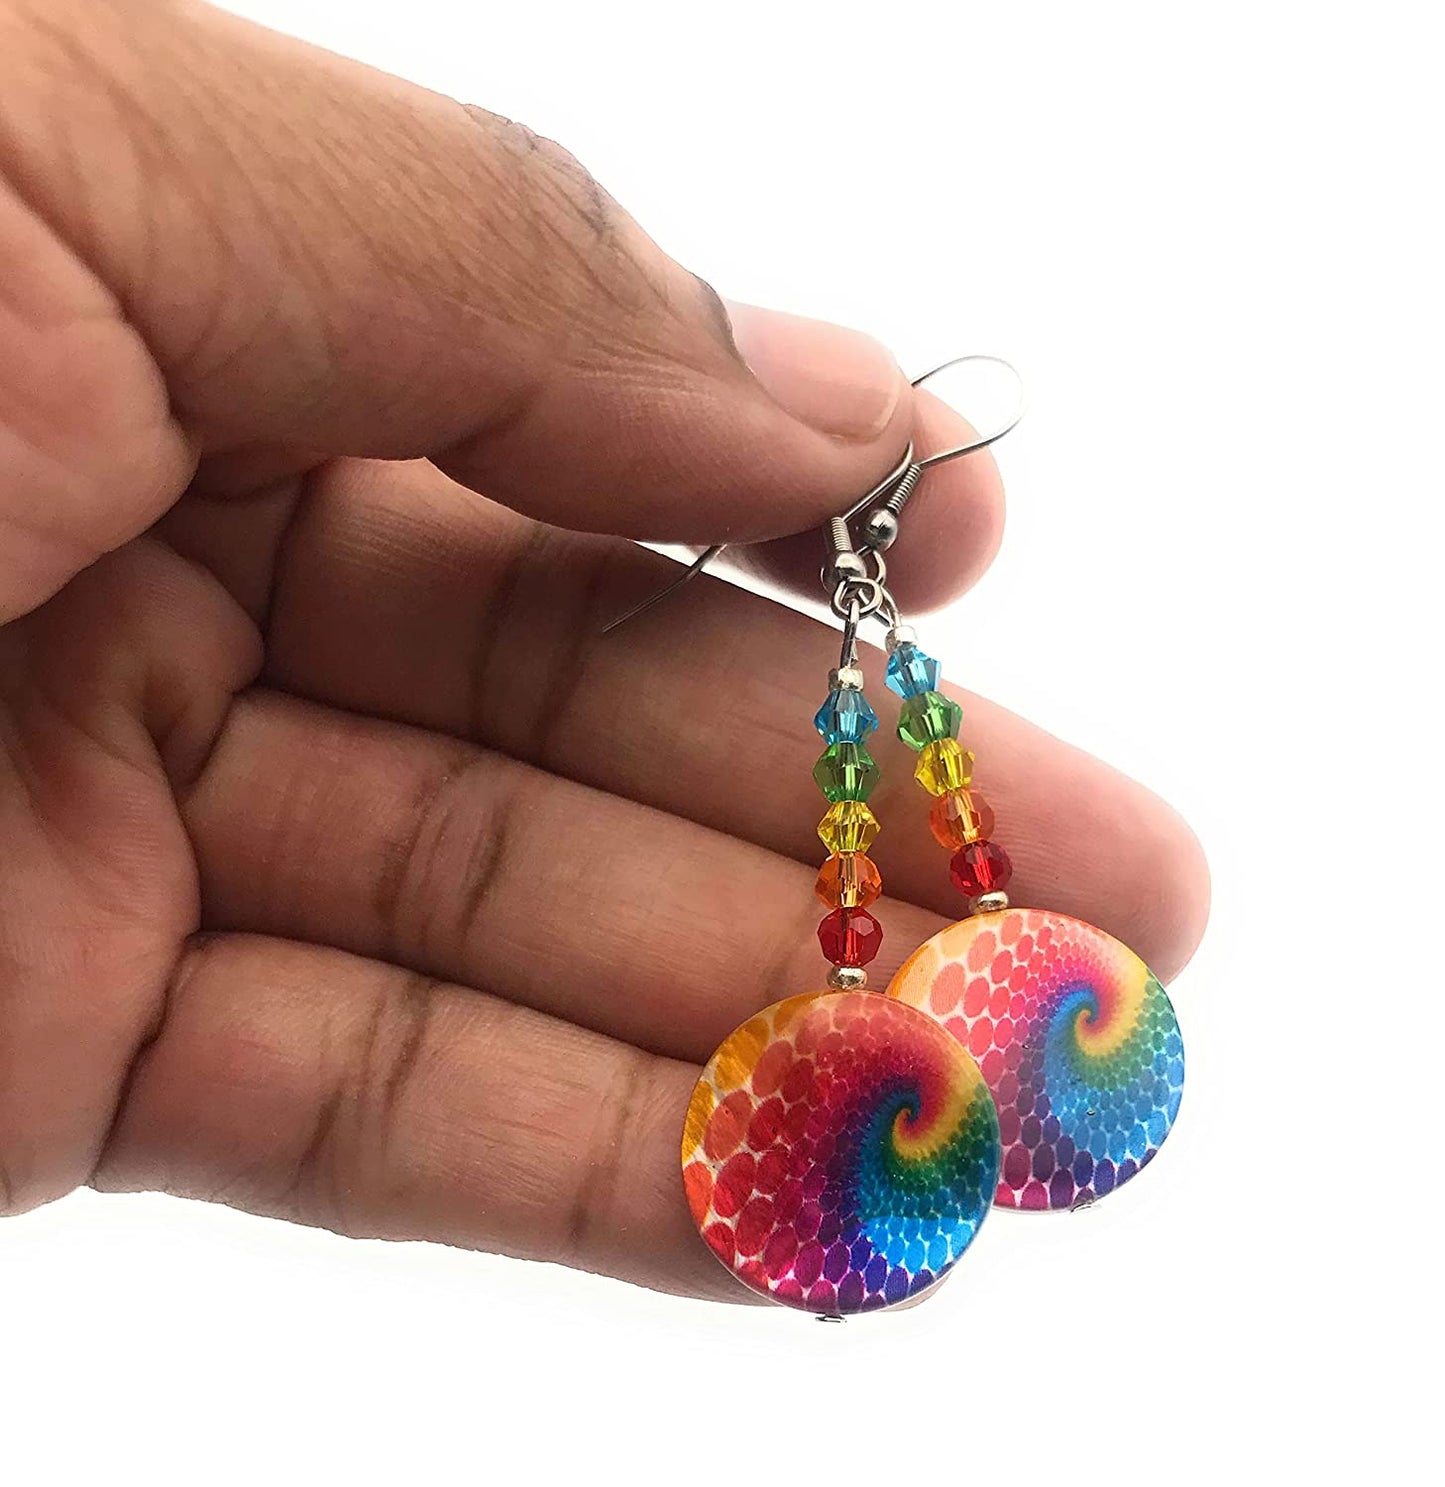 Rainbow Swirl Dangle Beaded Earrings for Women Held by Fingertips from Scott D Jewelry Designs